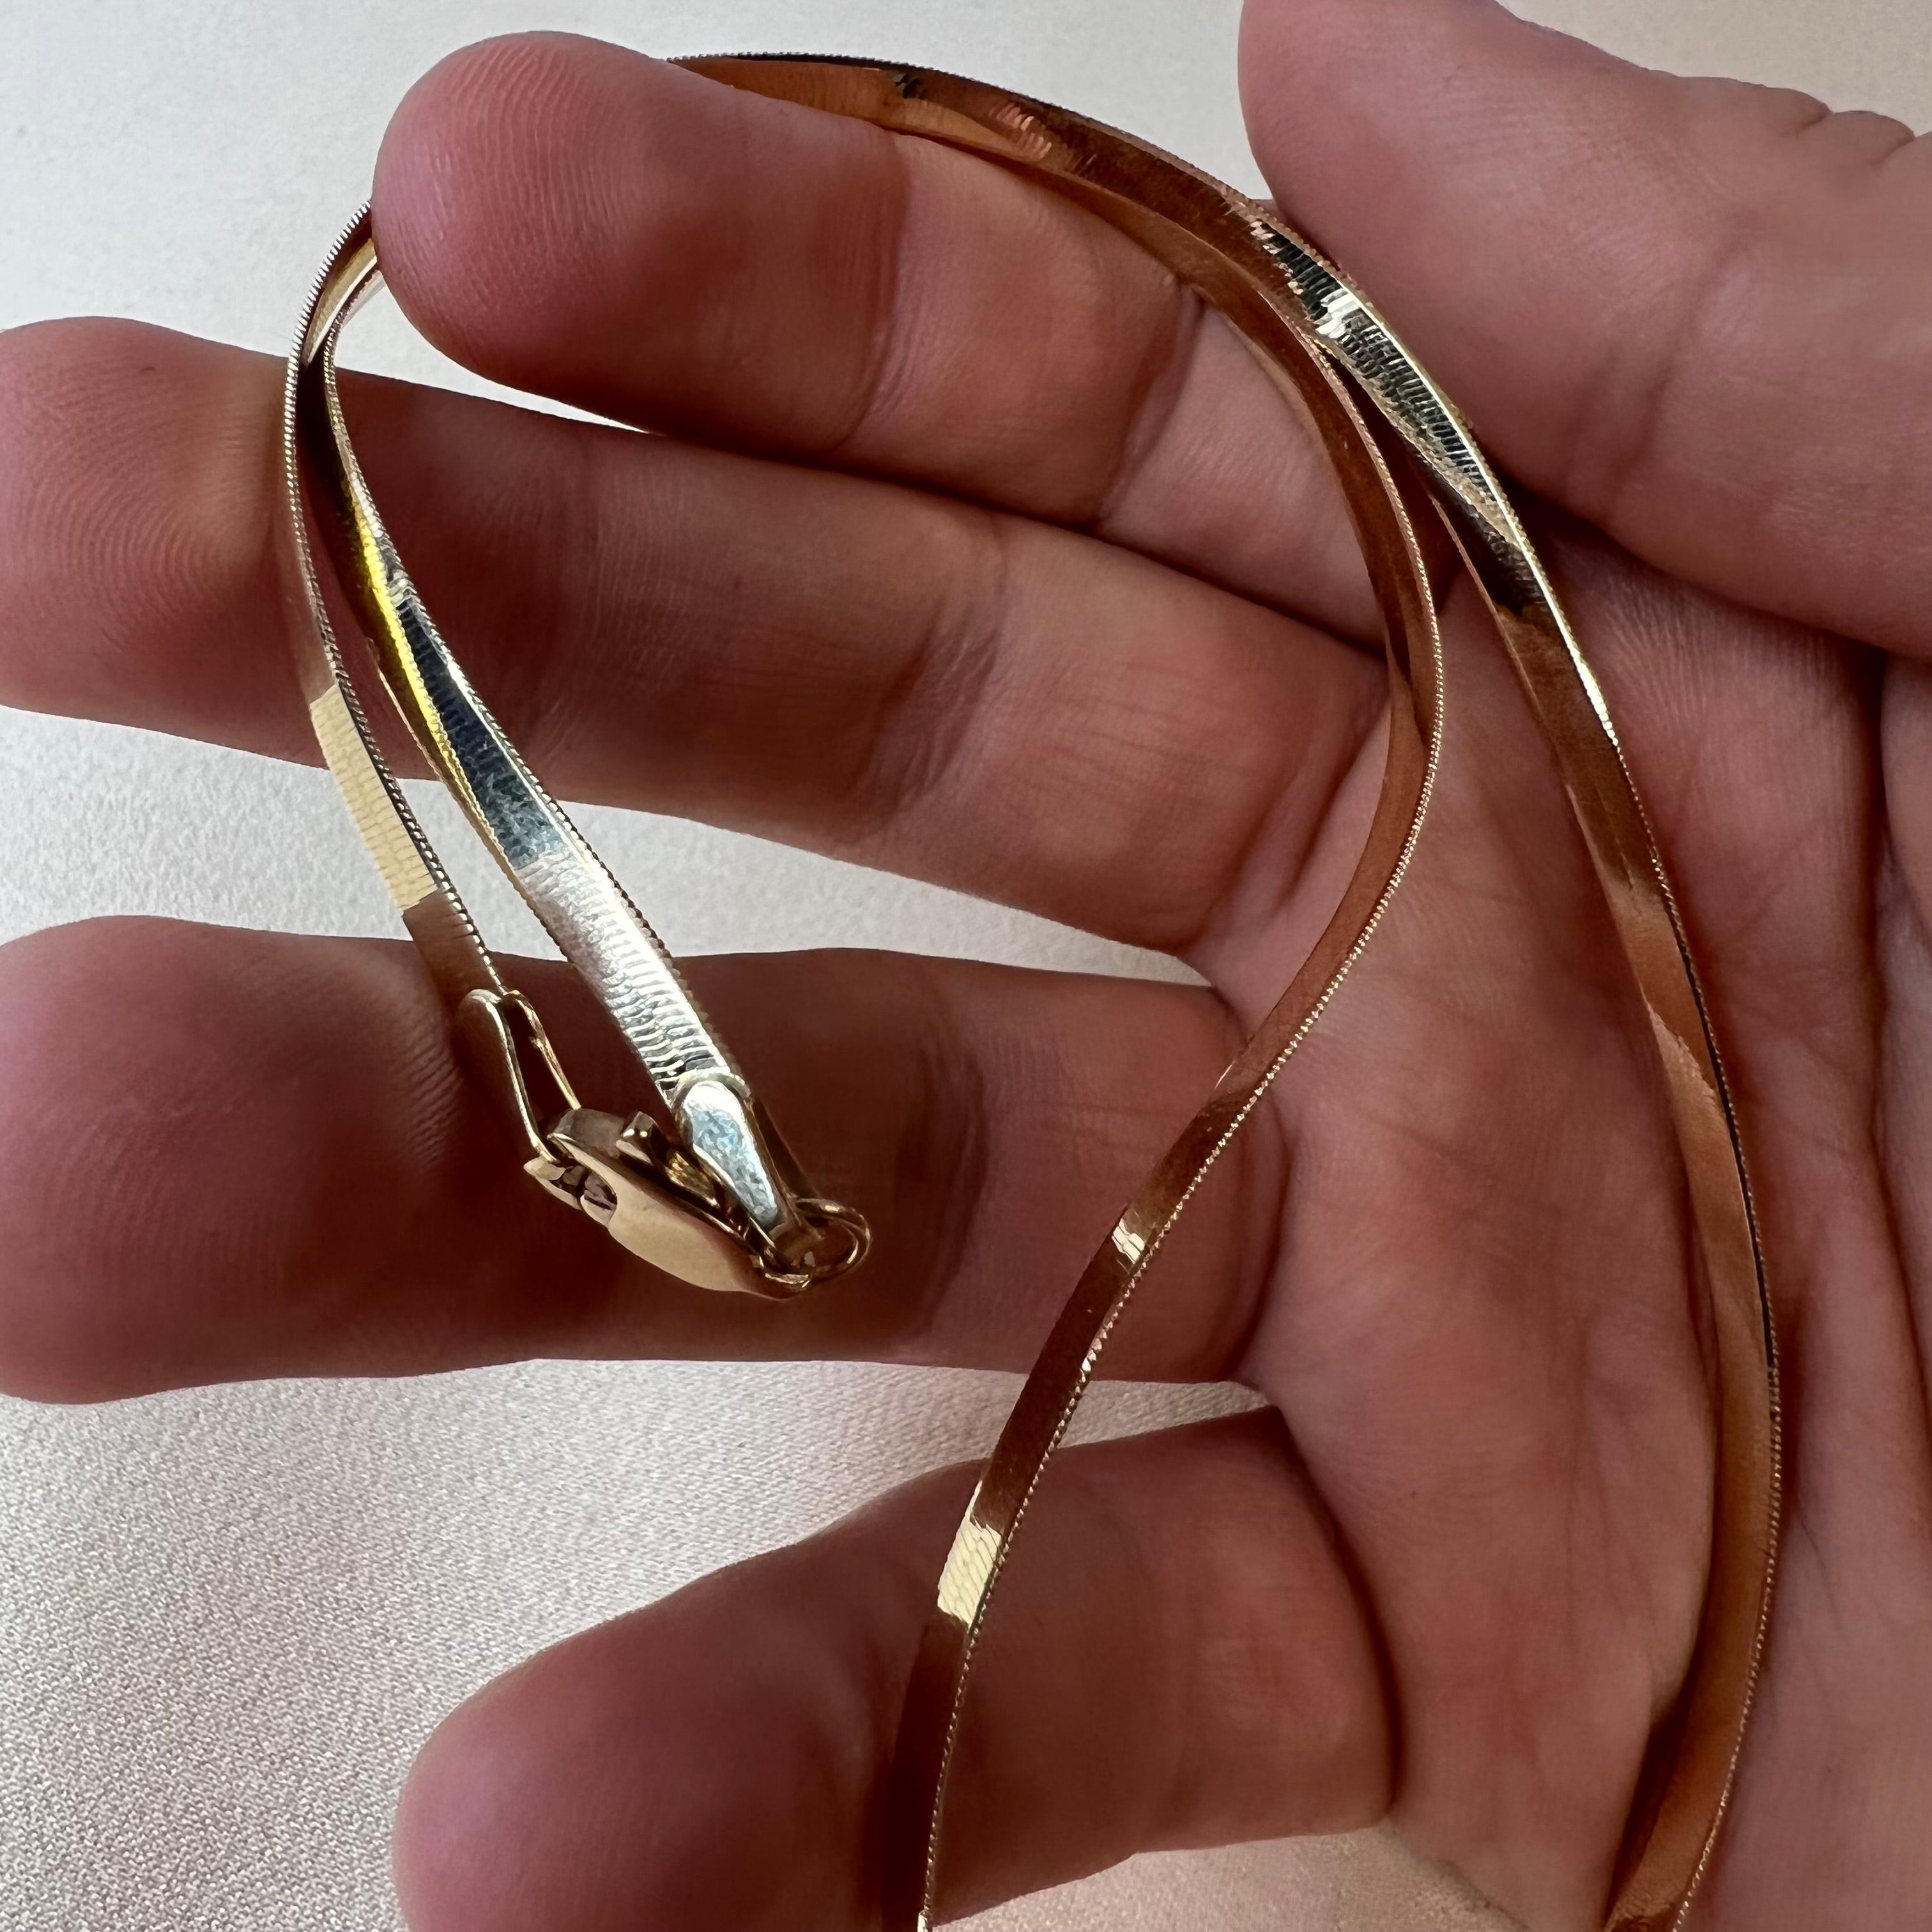 16” 3mm 14K Yellow Gold Herringbone Chain Necklace